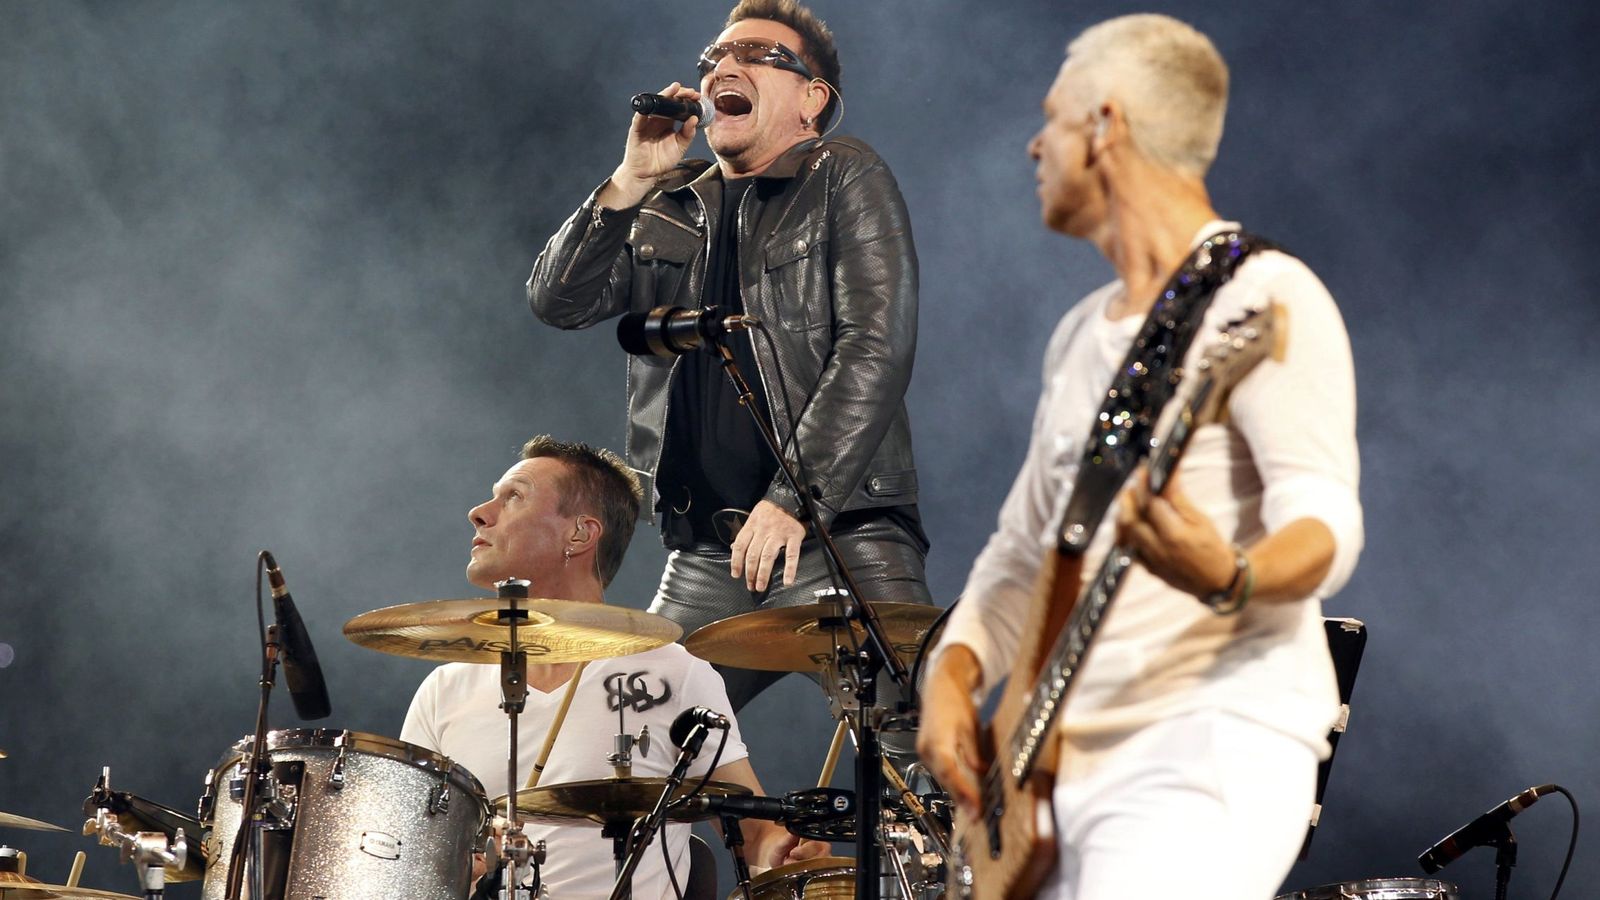 Foto: U2 en un concierto (Reuters)